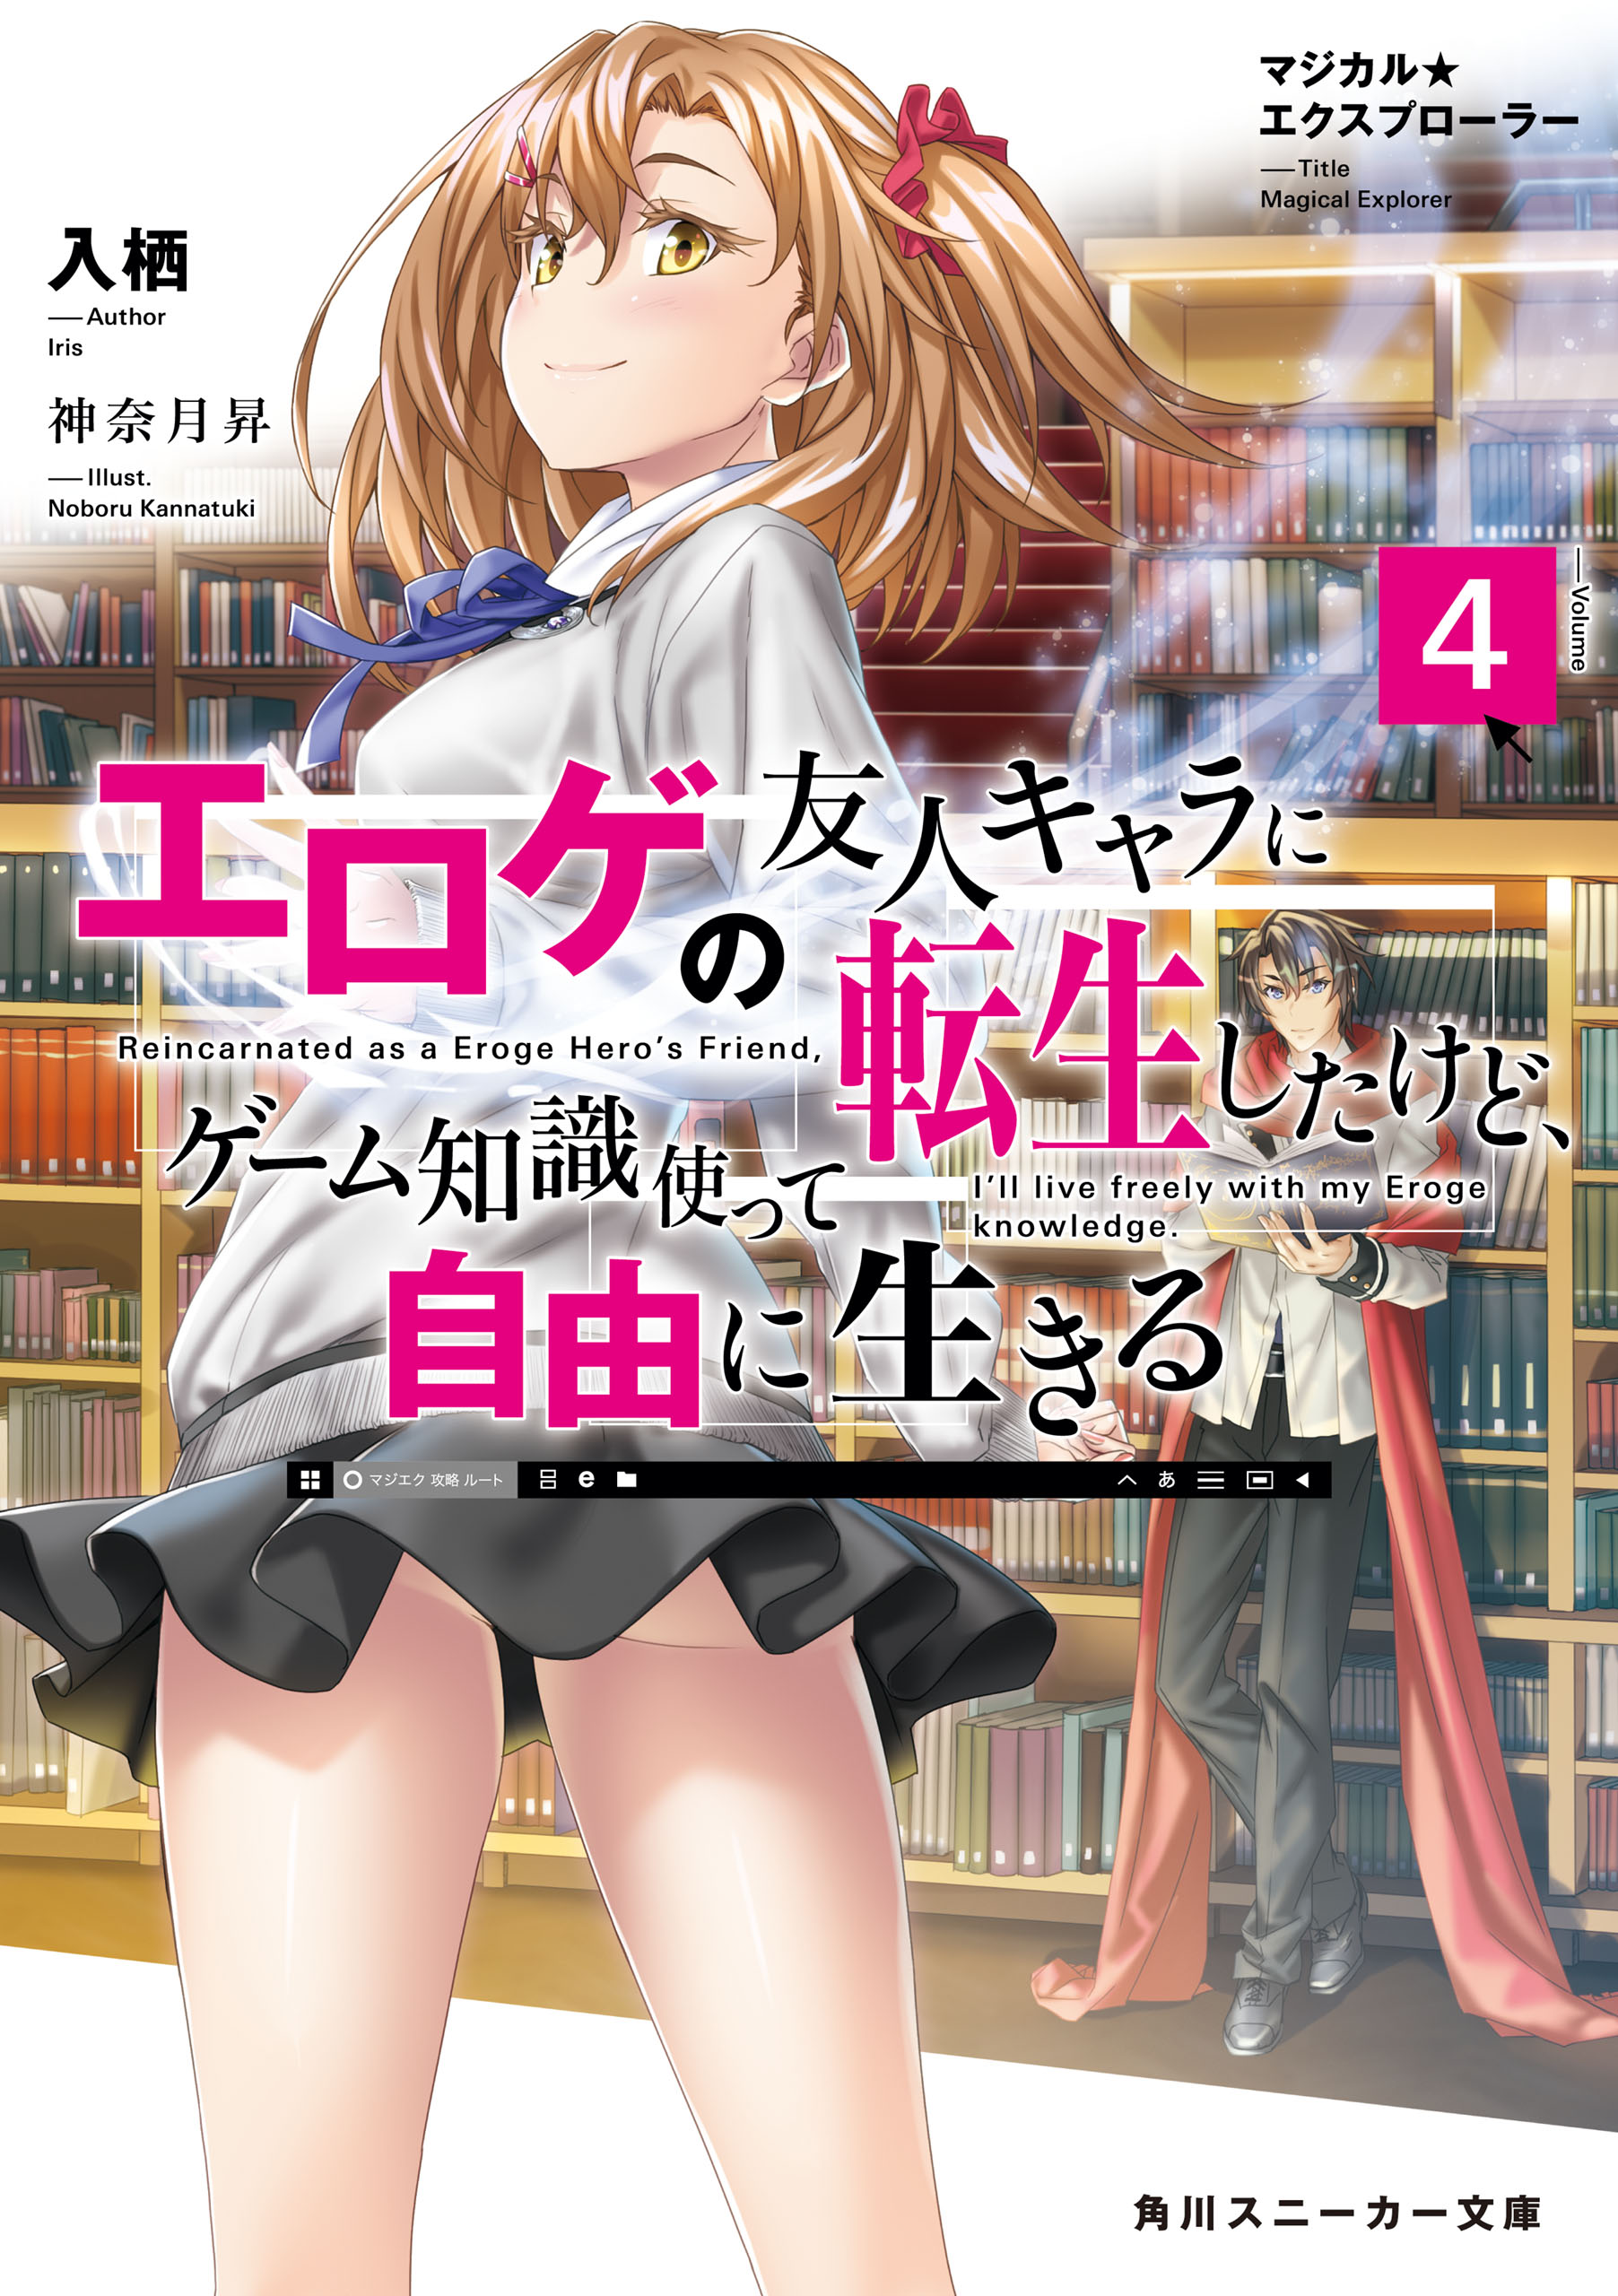 Light Novel Volume 04 | Magical☆Explorer Wiki | Fandom